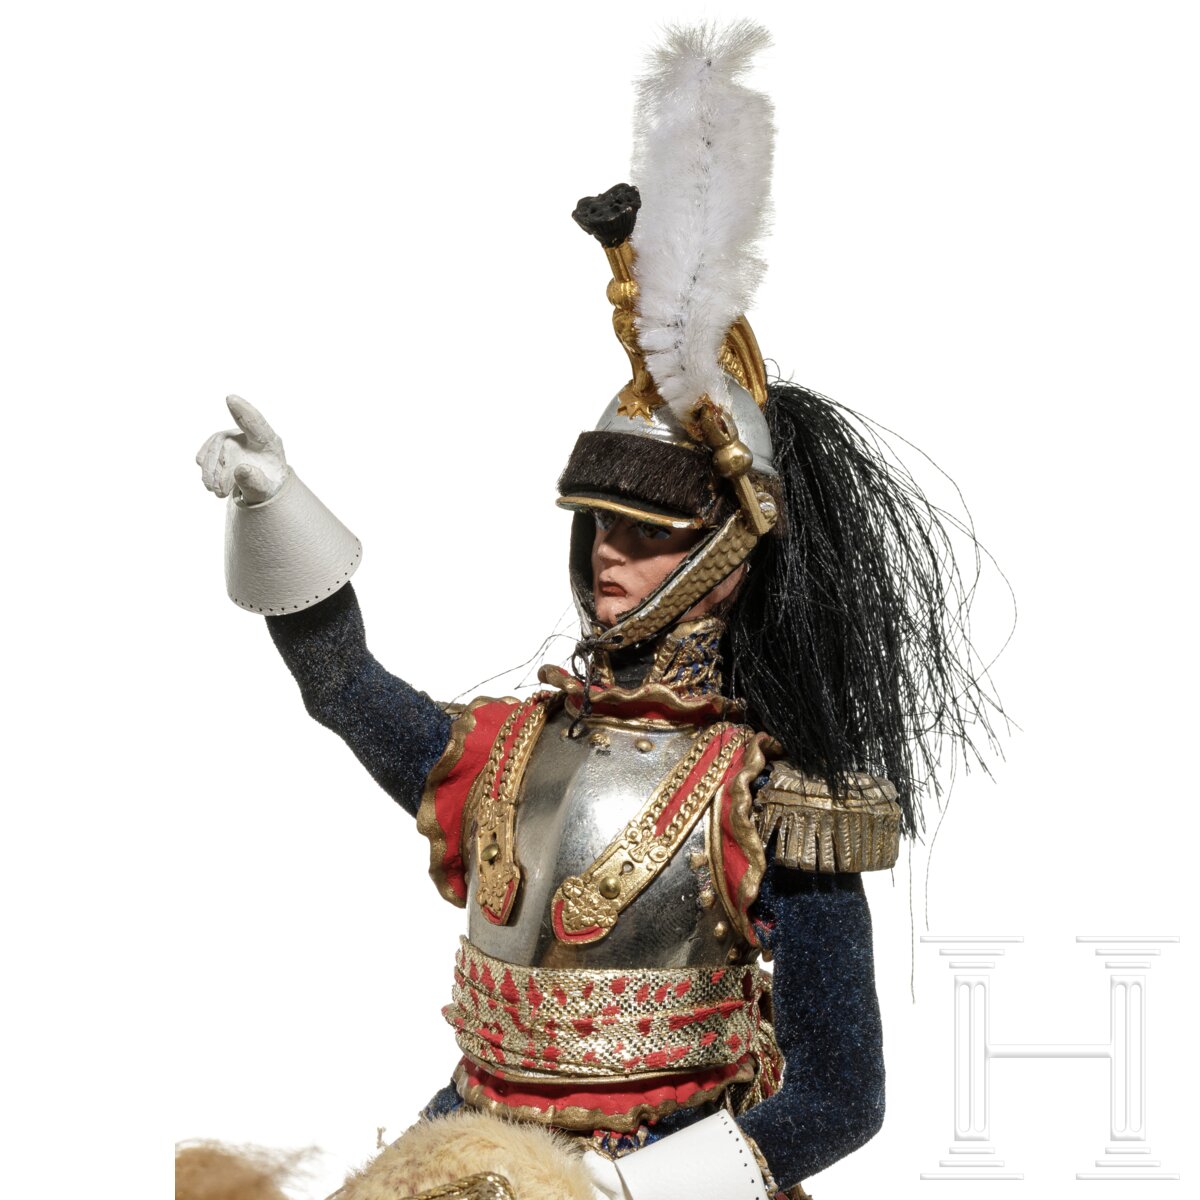 General der Kürassiere um 1810 auf Pferd - Uniformfigur von Marcel Riffet, 20. Jhdt. - Image 6 of 6